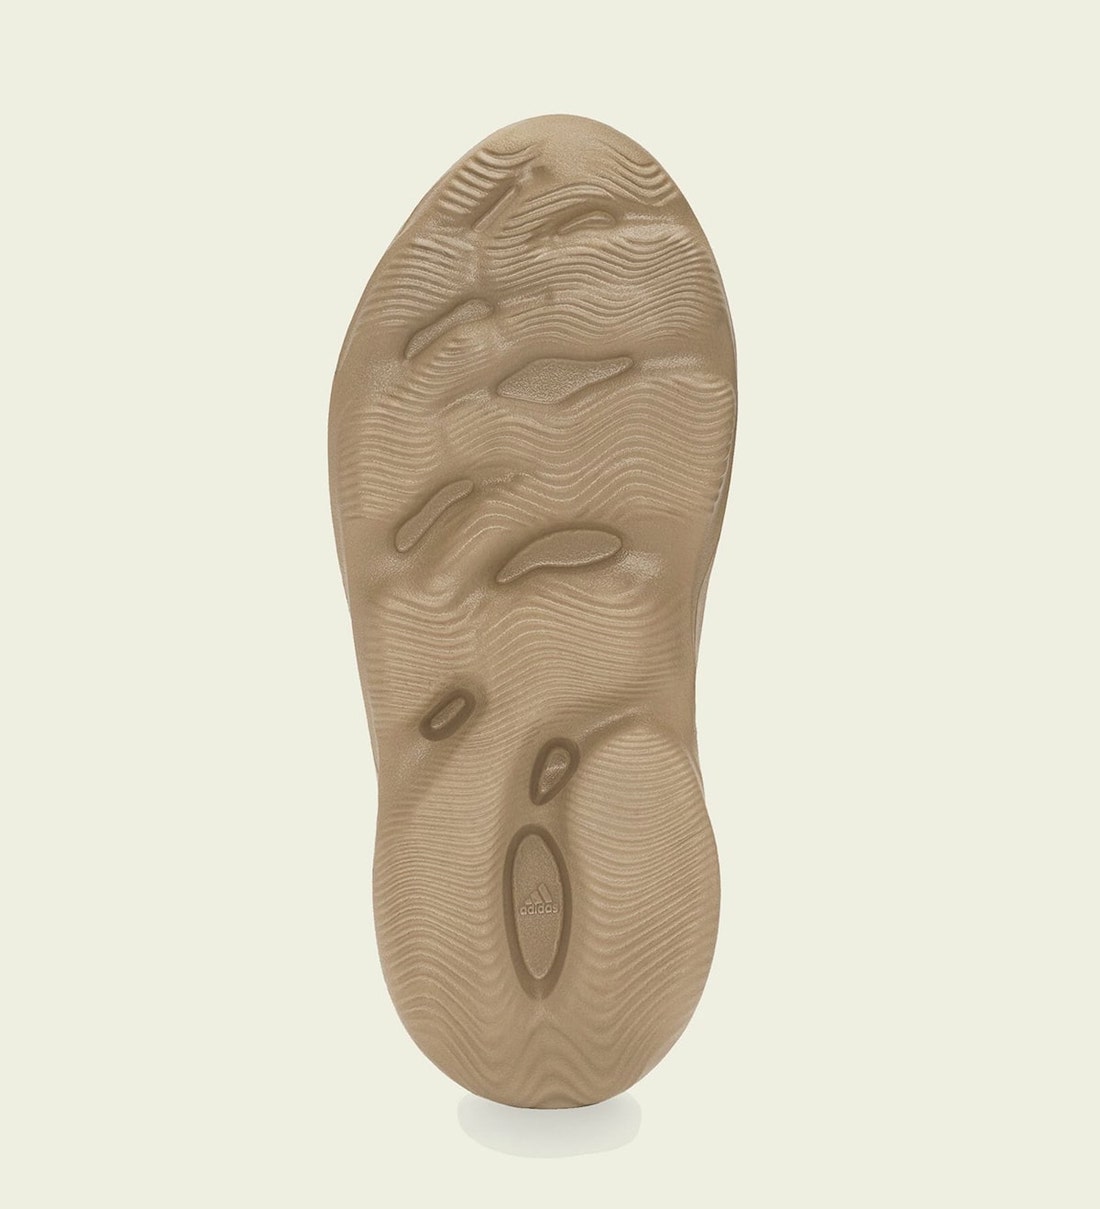 adidas Yeezy Foam Runner Ochre GW3354 Release Date Price